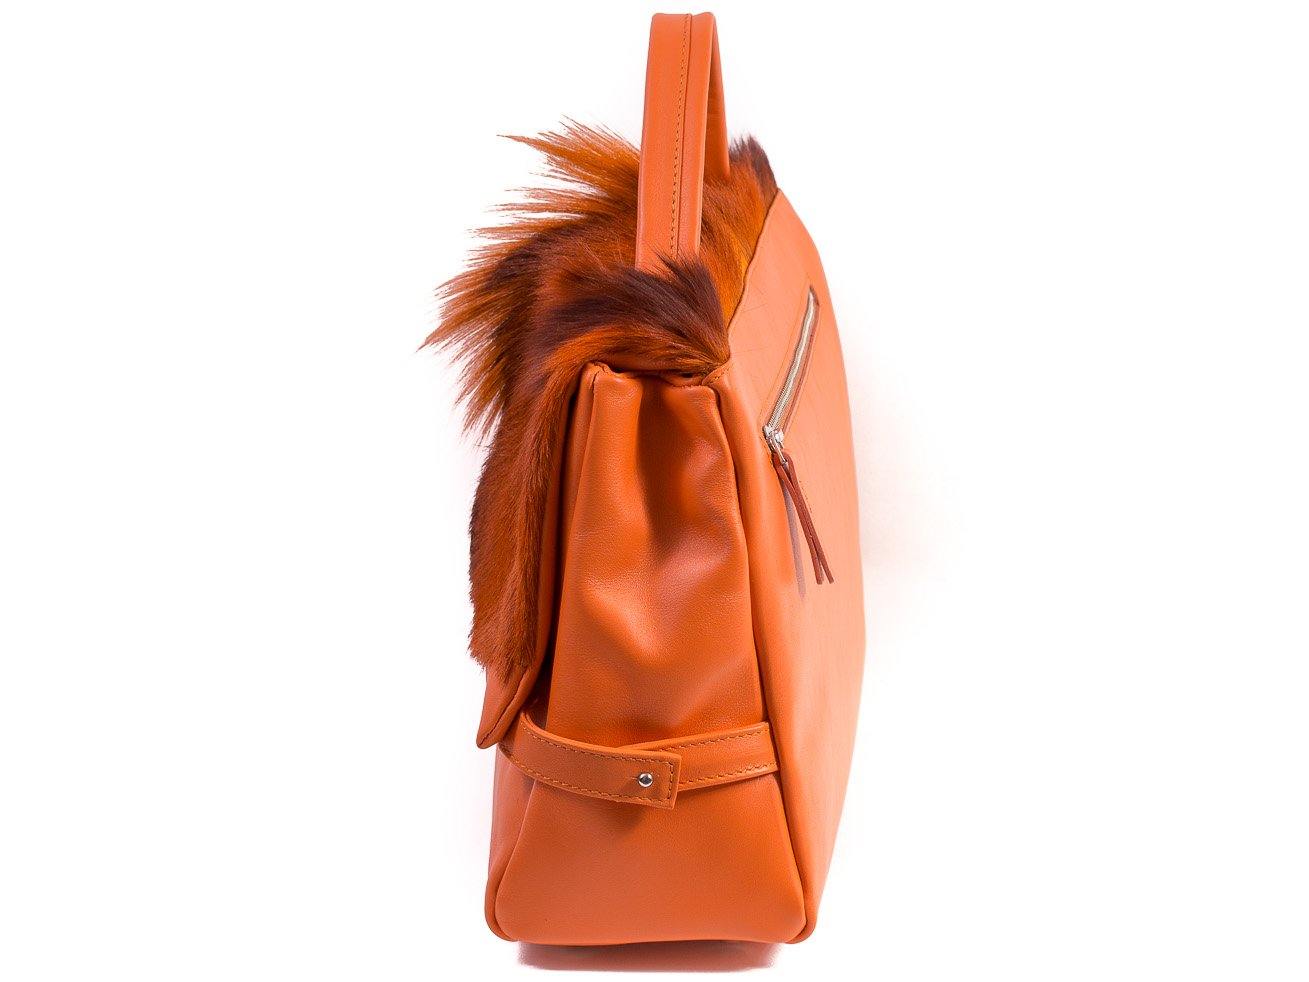 sherene melinda springbok hair-on-hide orange leather smith tote bag Fan side